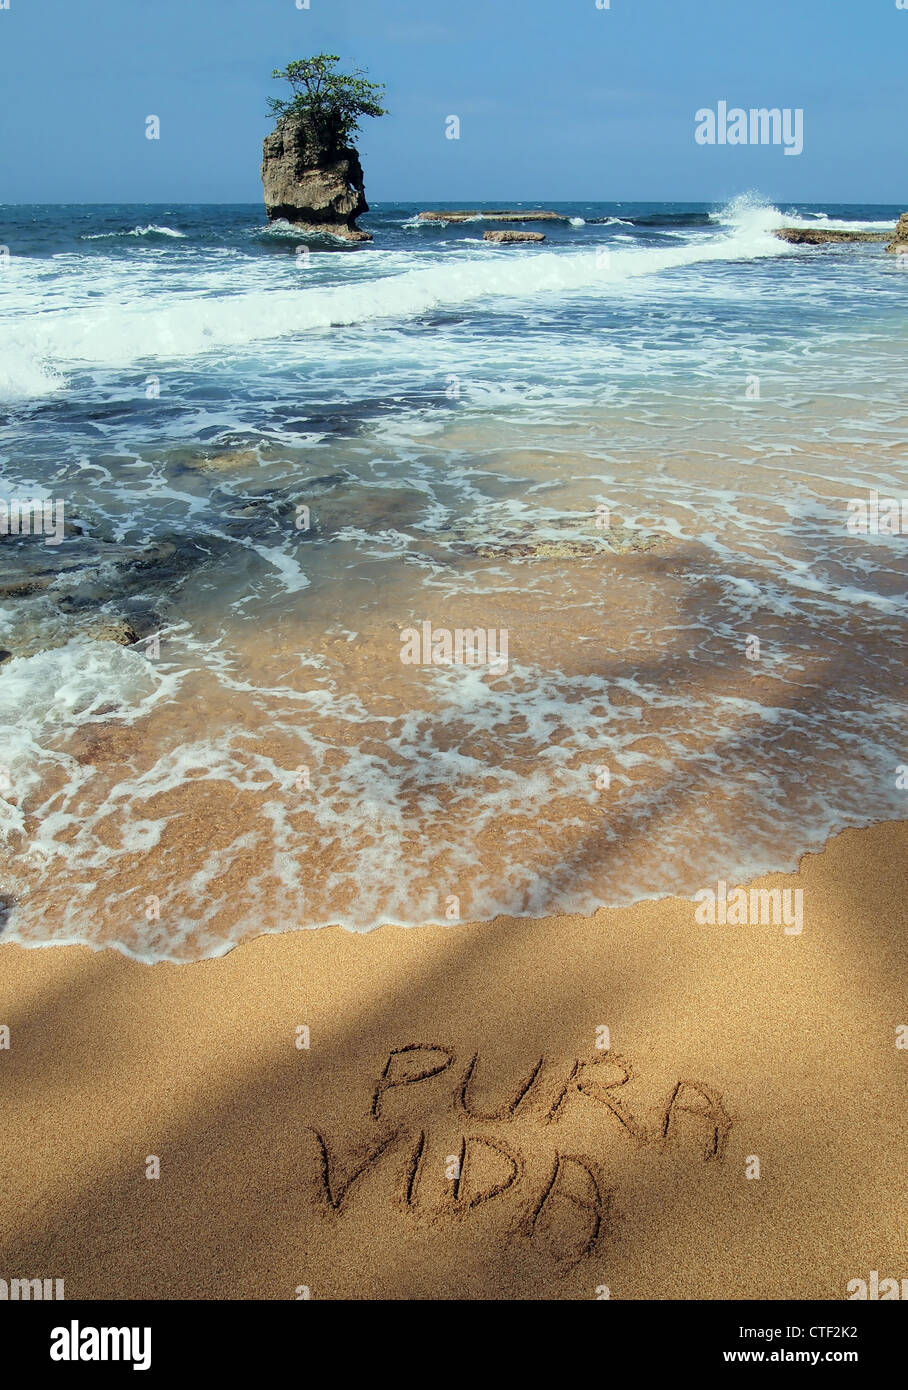 Le parole "pura vida' Scritta sulla sabbia sulla riva del mare di una spiaggia tropicale con un isolotto roccioso, costa caraibica del Costa Rica, America Centrale Foto Stock